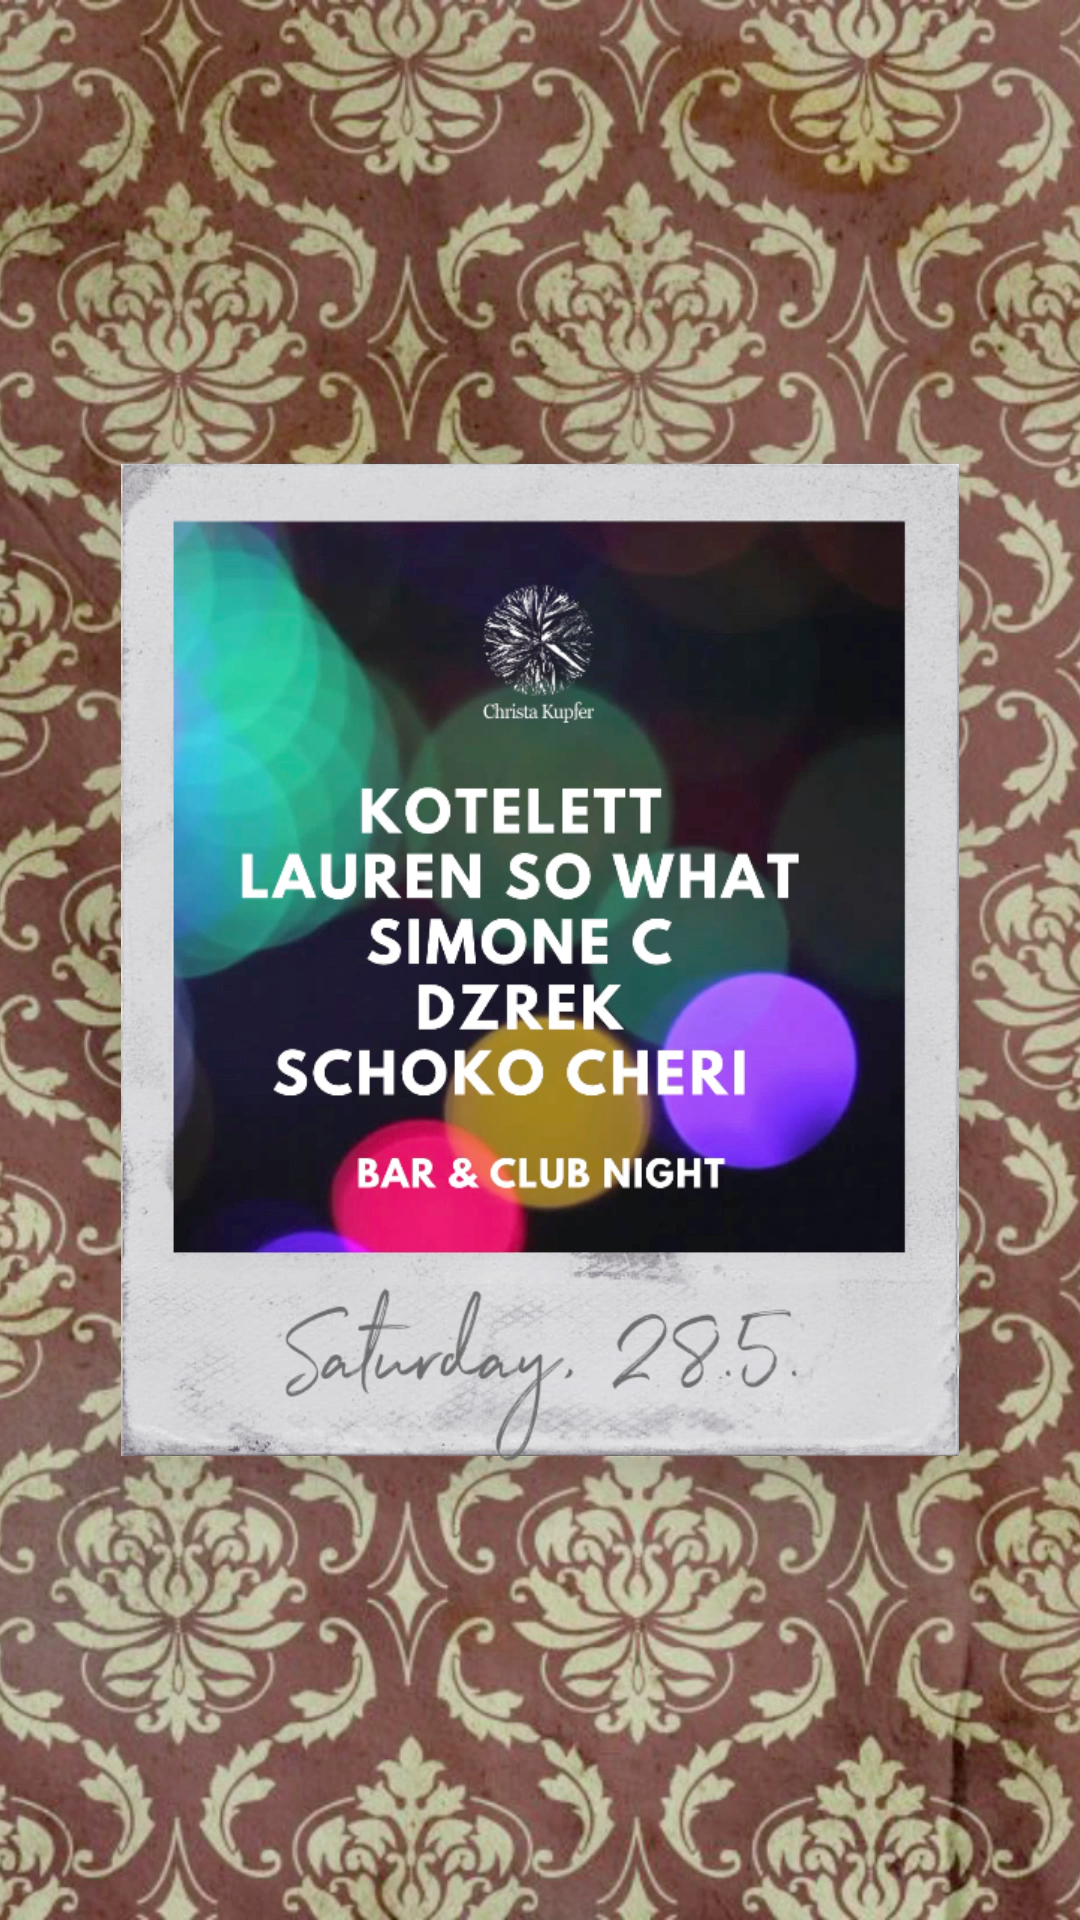 Bar & Club Night with Kotelett, Lauren So What, Simone C, Dzrek, Schoko Cheri - フライヤー表